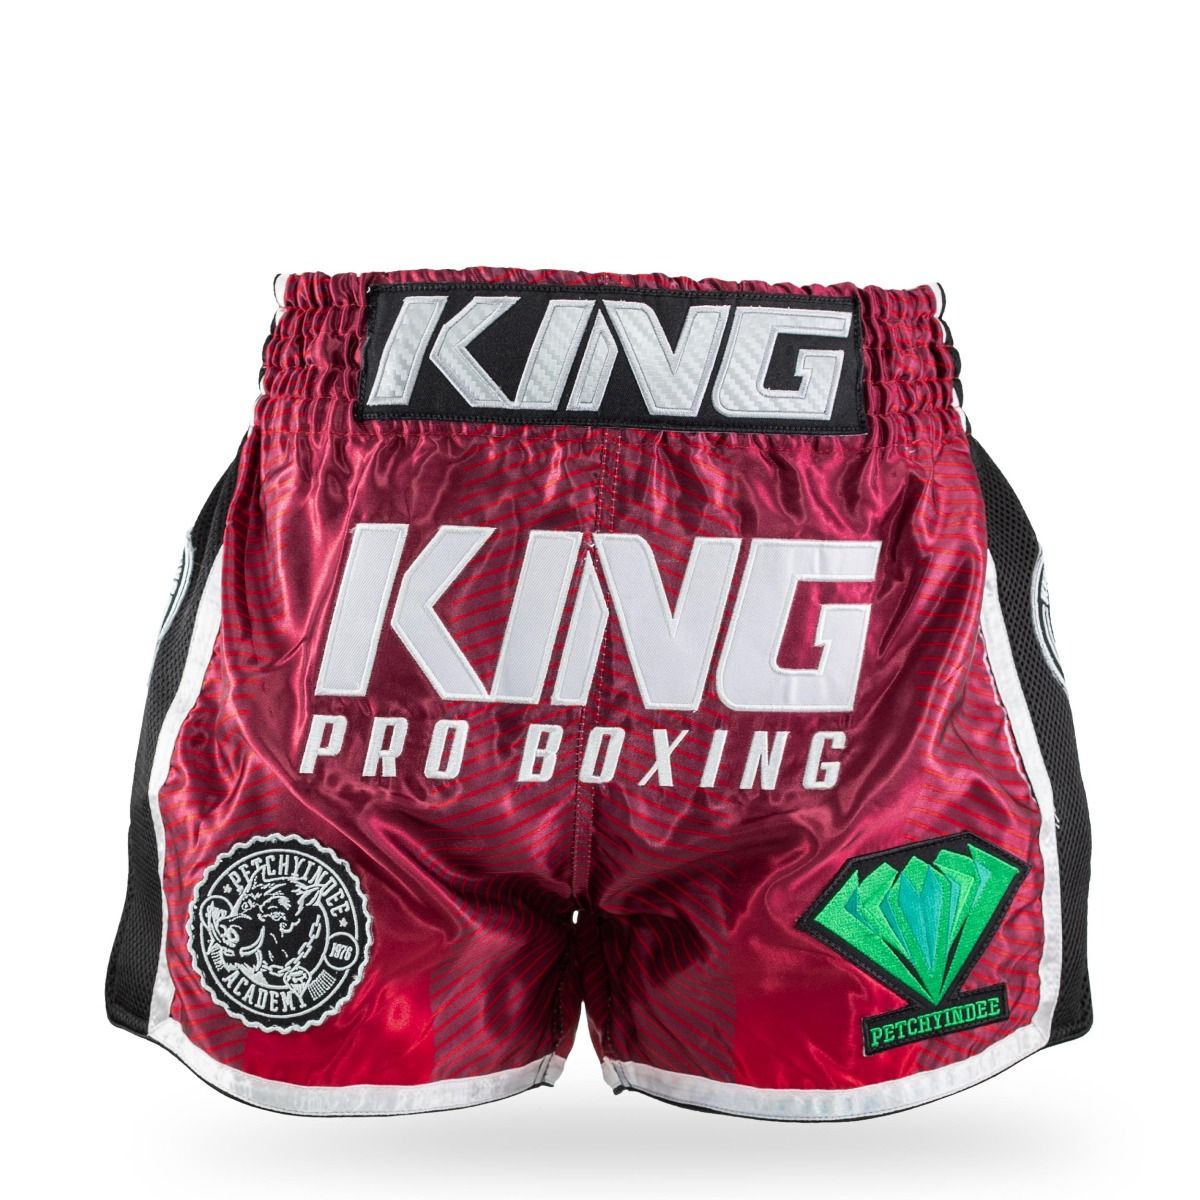 King Pro Boxing-Fightshort-Kickboksbroek-PRYDE 1-Rood-Groen-Zwart